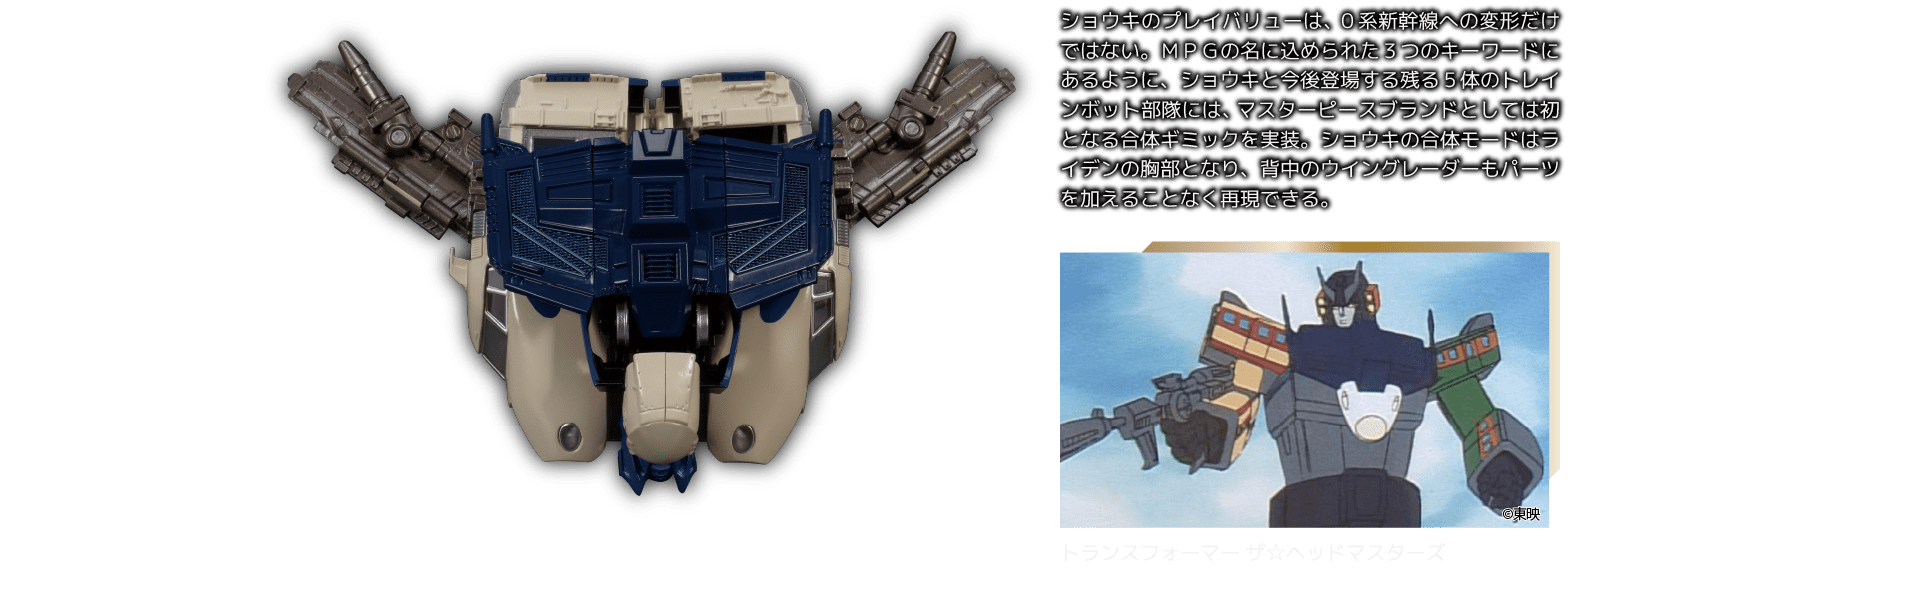 MPG-01 サイバトロン/光速指揮官 トレインボットショウキ